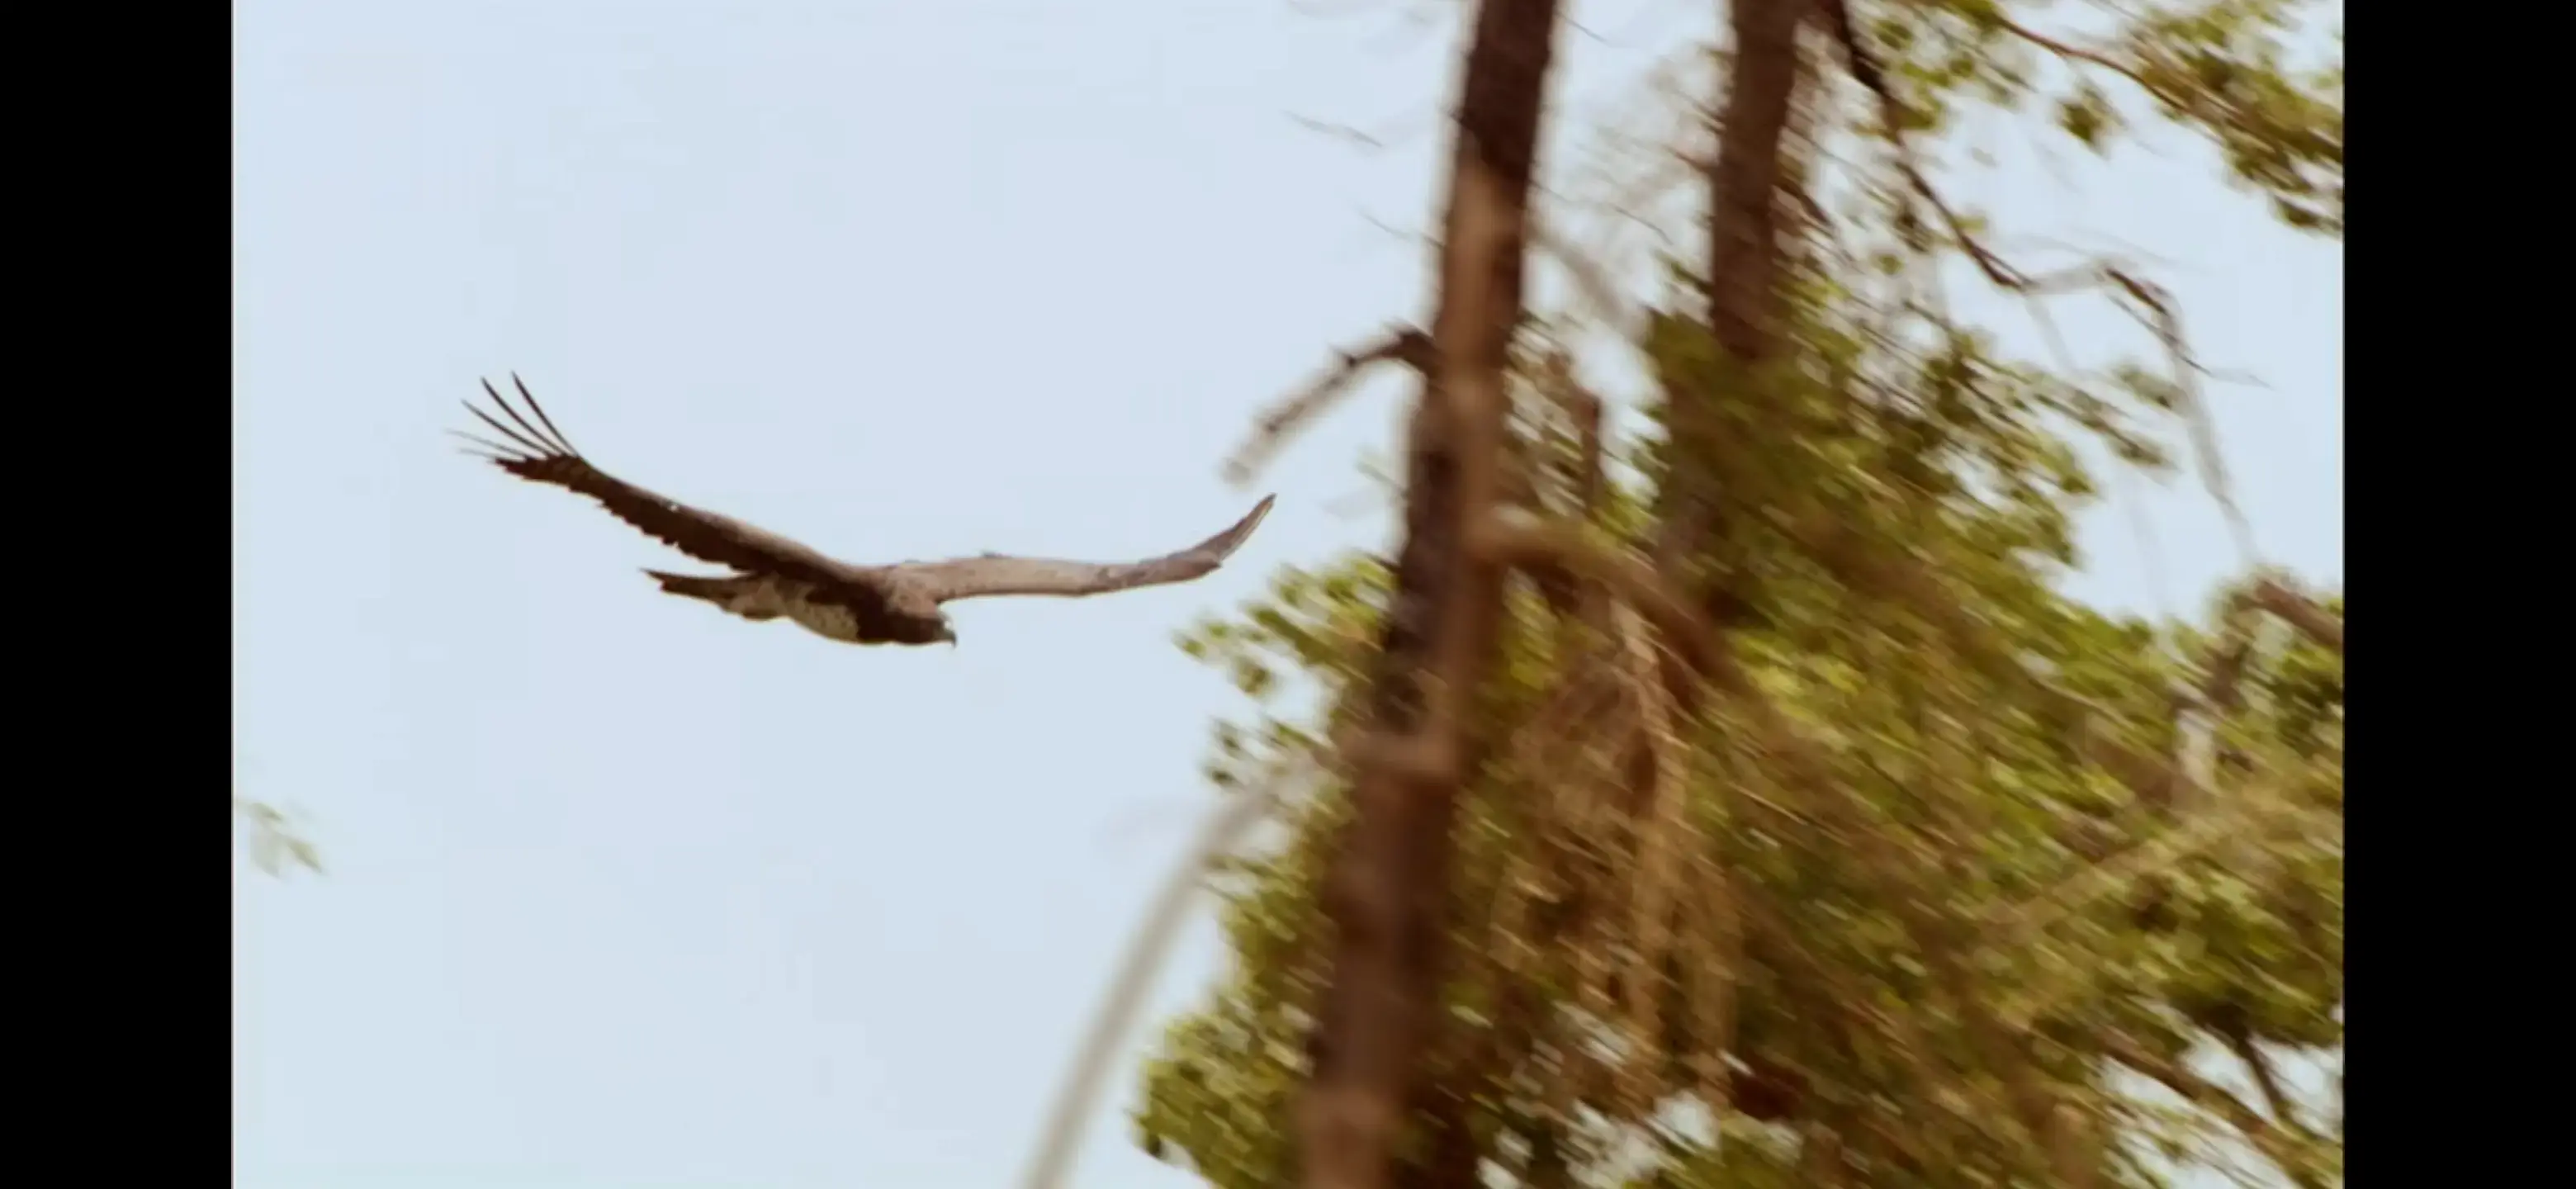 Martial eagle (Polemaetus bellicosus) as shown in Africa - Kalahari